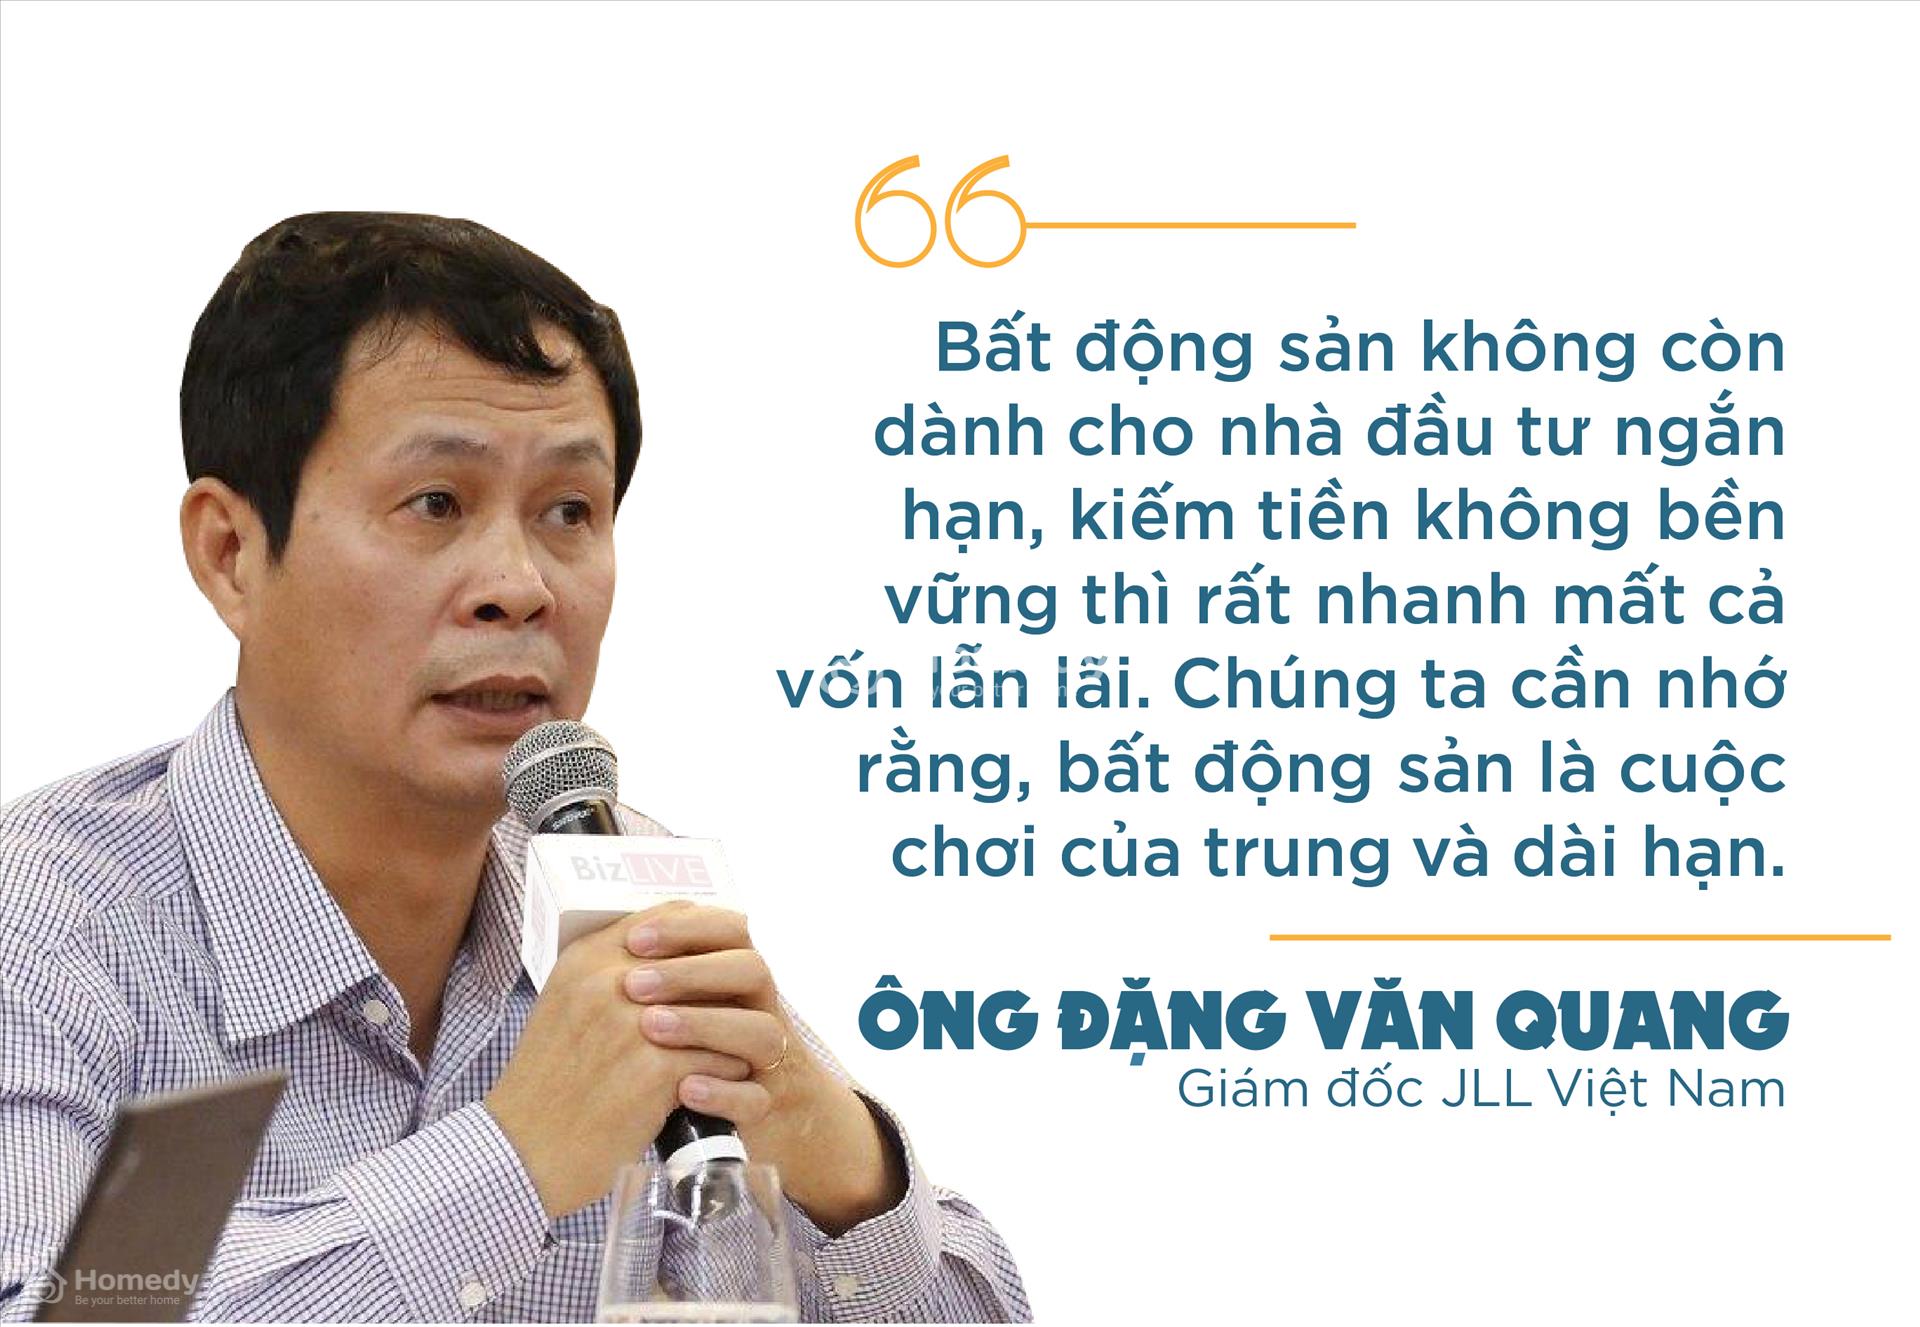 Đặng Văn Quang, Giám đốc JLL Việt Nam